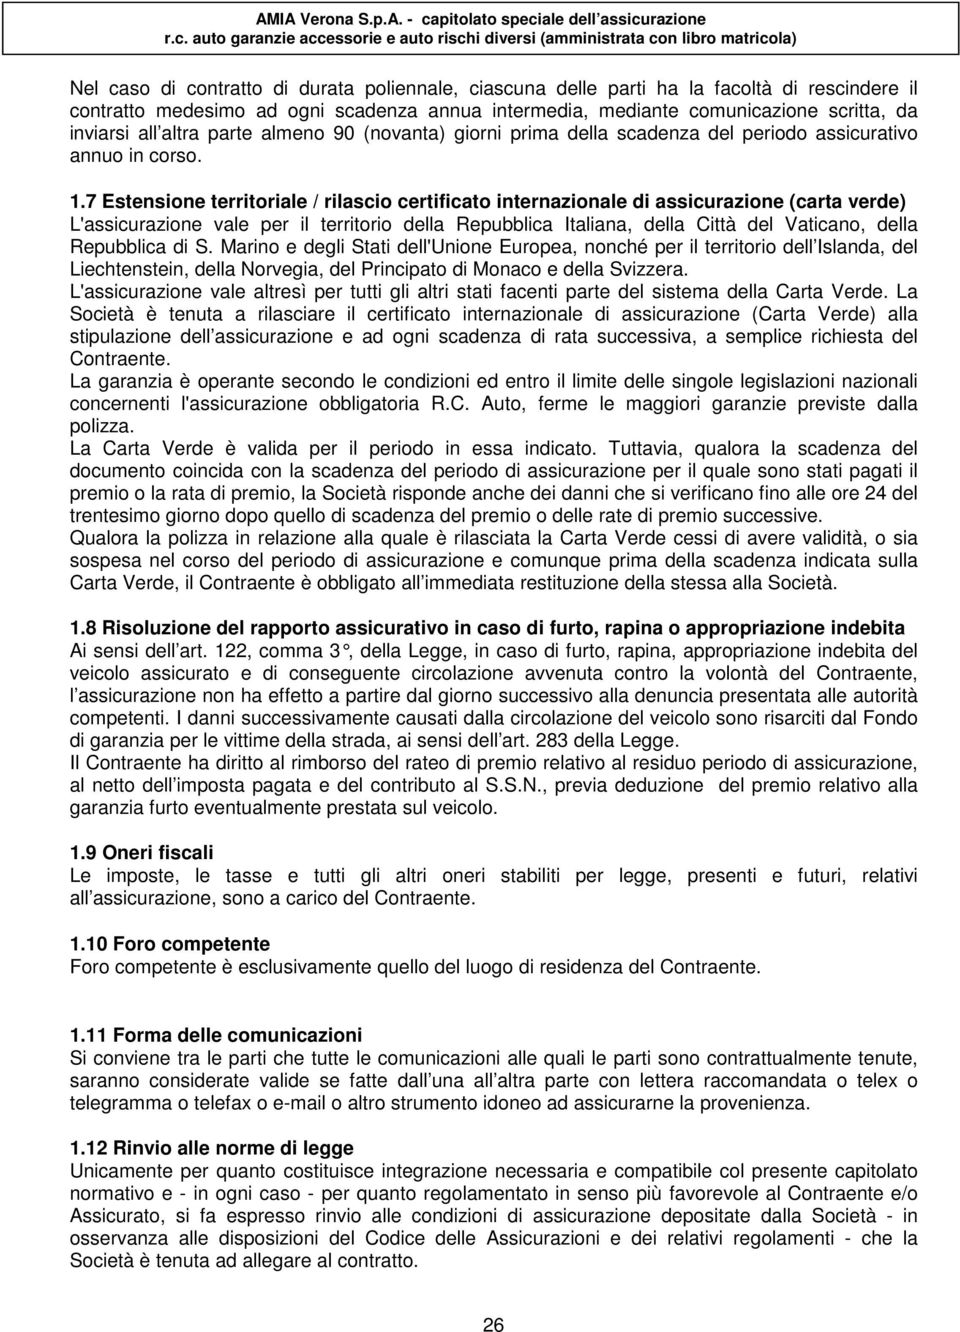 7 Estensione territoriale / rilascio certificato internazionale di assicurazione (carta verde) L'assicurazione vale per il territorio della Repubblica Italiana, della Città del Vaticano, della